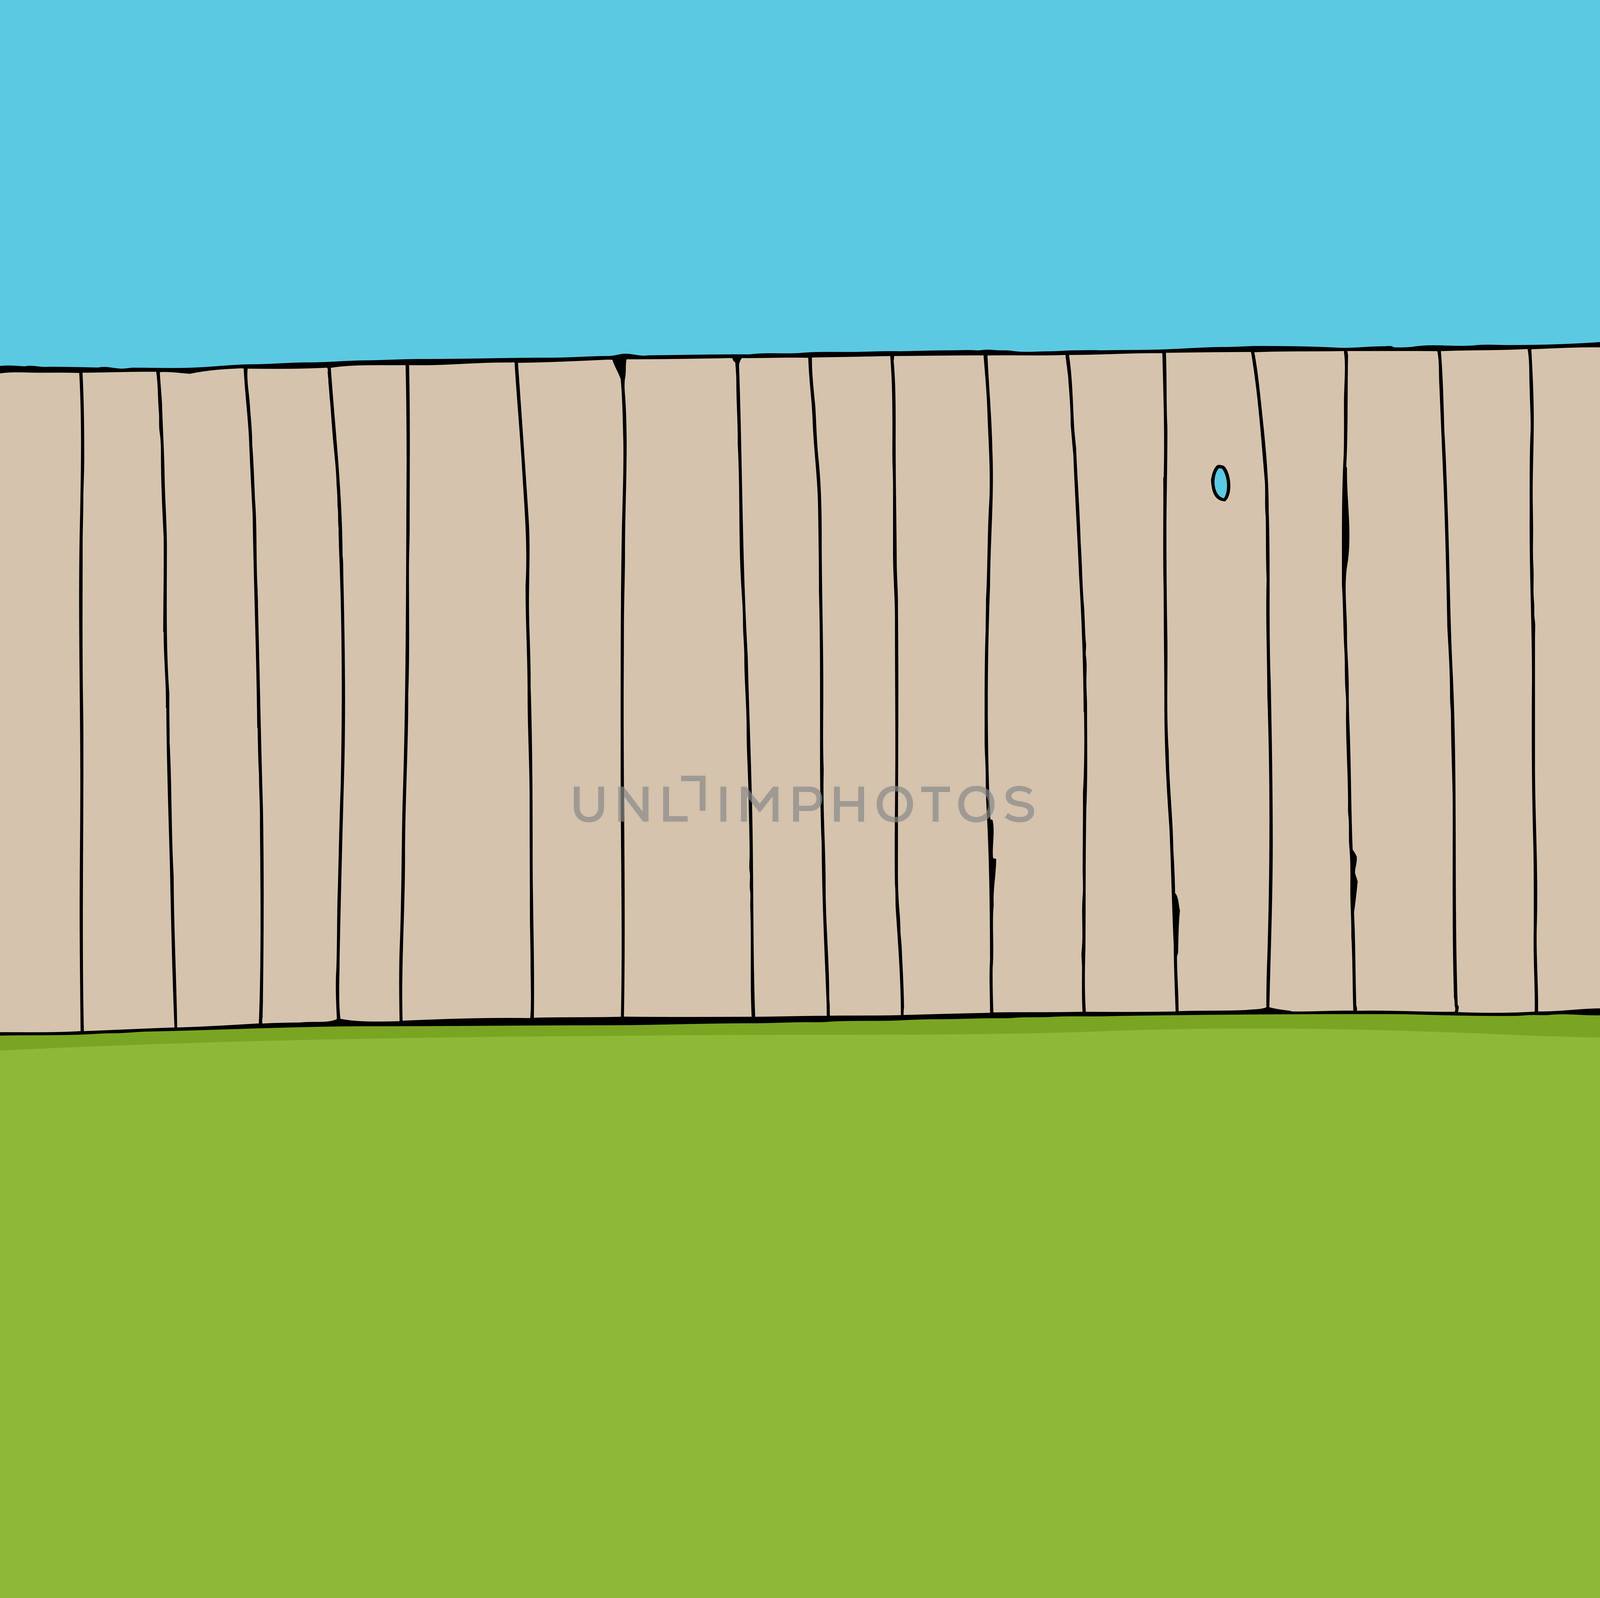 Cartoon of wooden fence near green grass